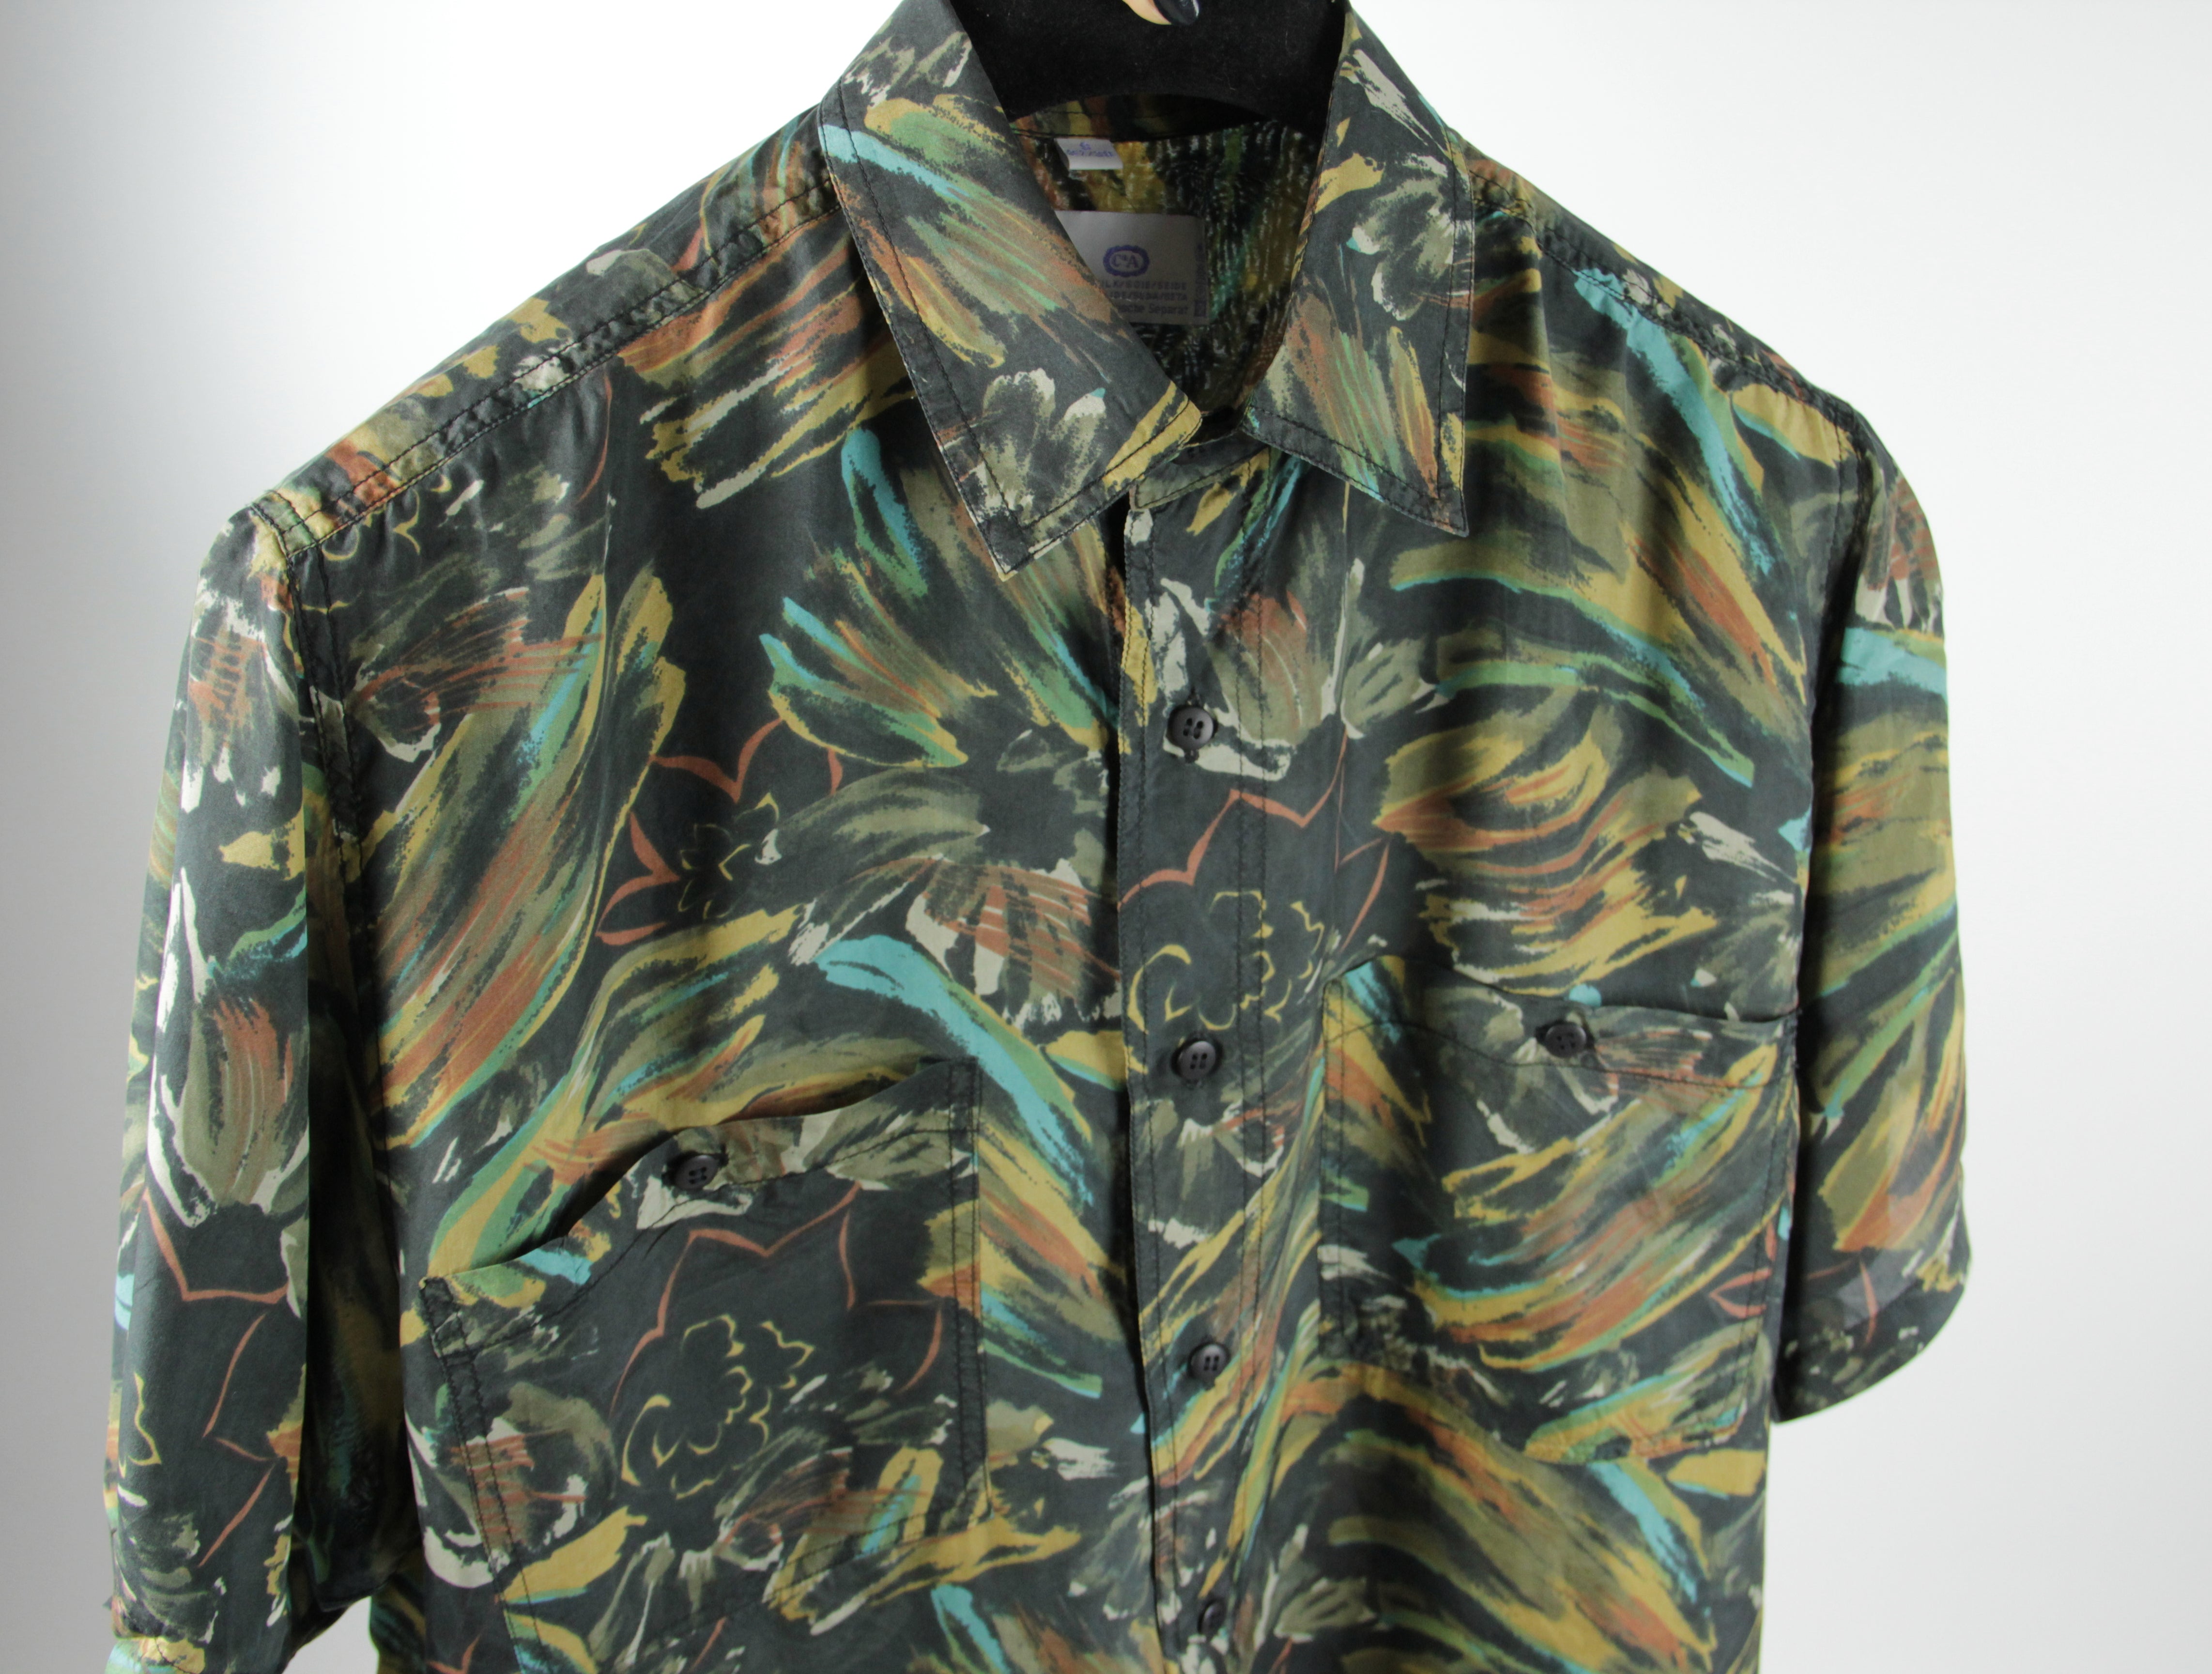 Vintage 100% Silk Khaki Green Floral / Camo Print Shirt, SIZE M